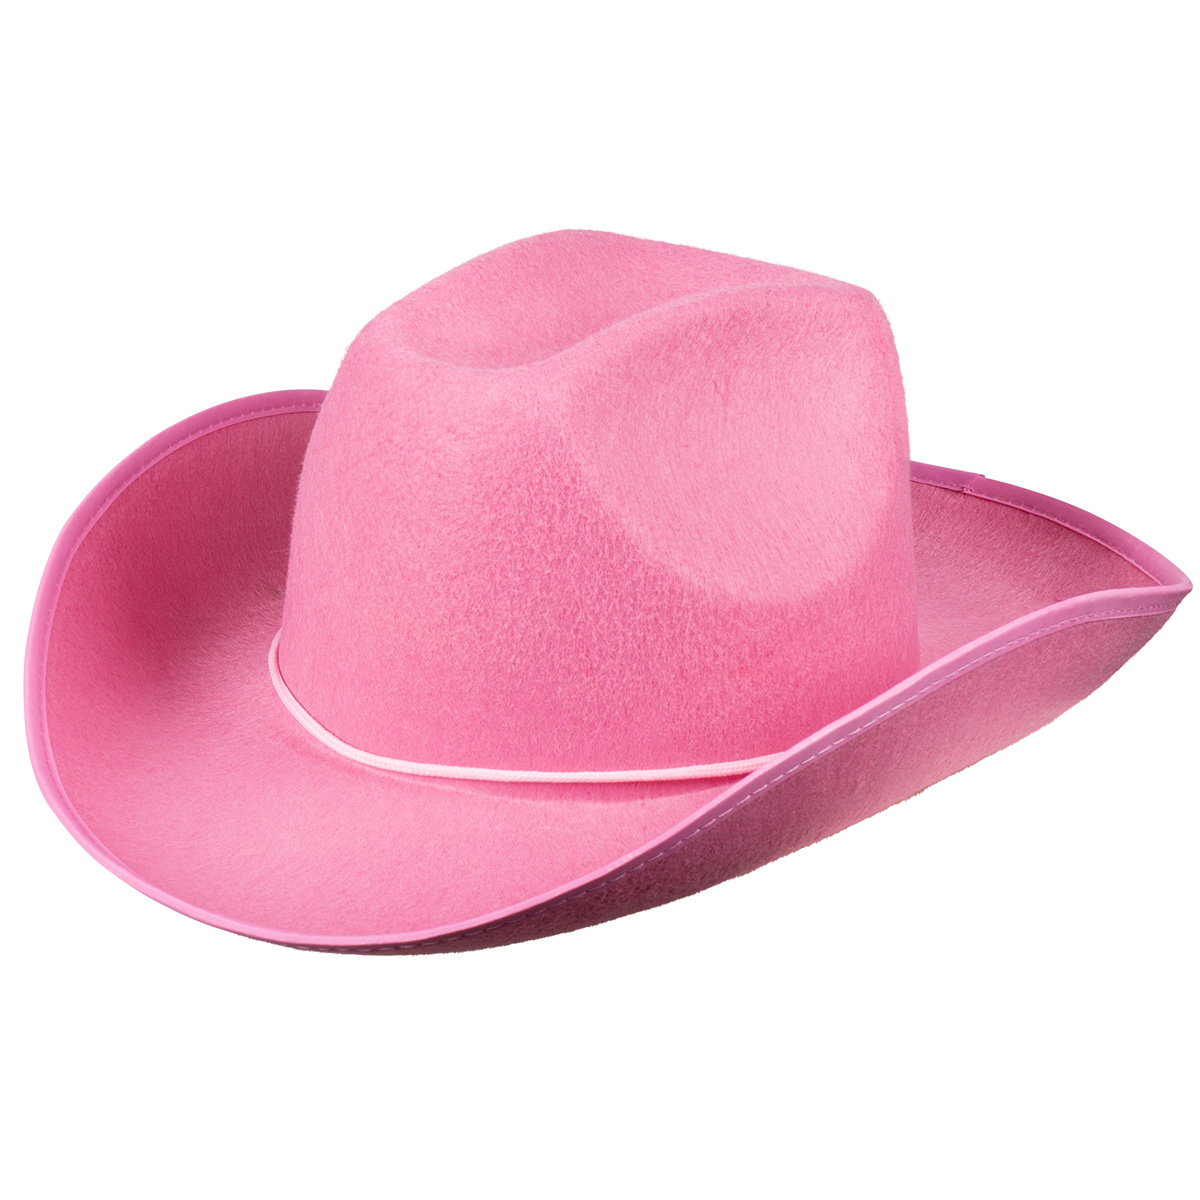 Cowboyhatt, rodeo rosaproduktzoombild #1